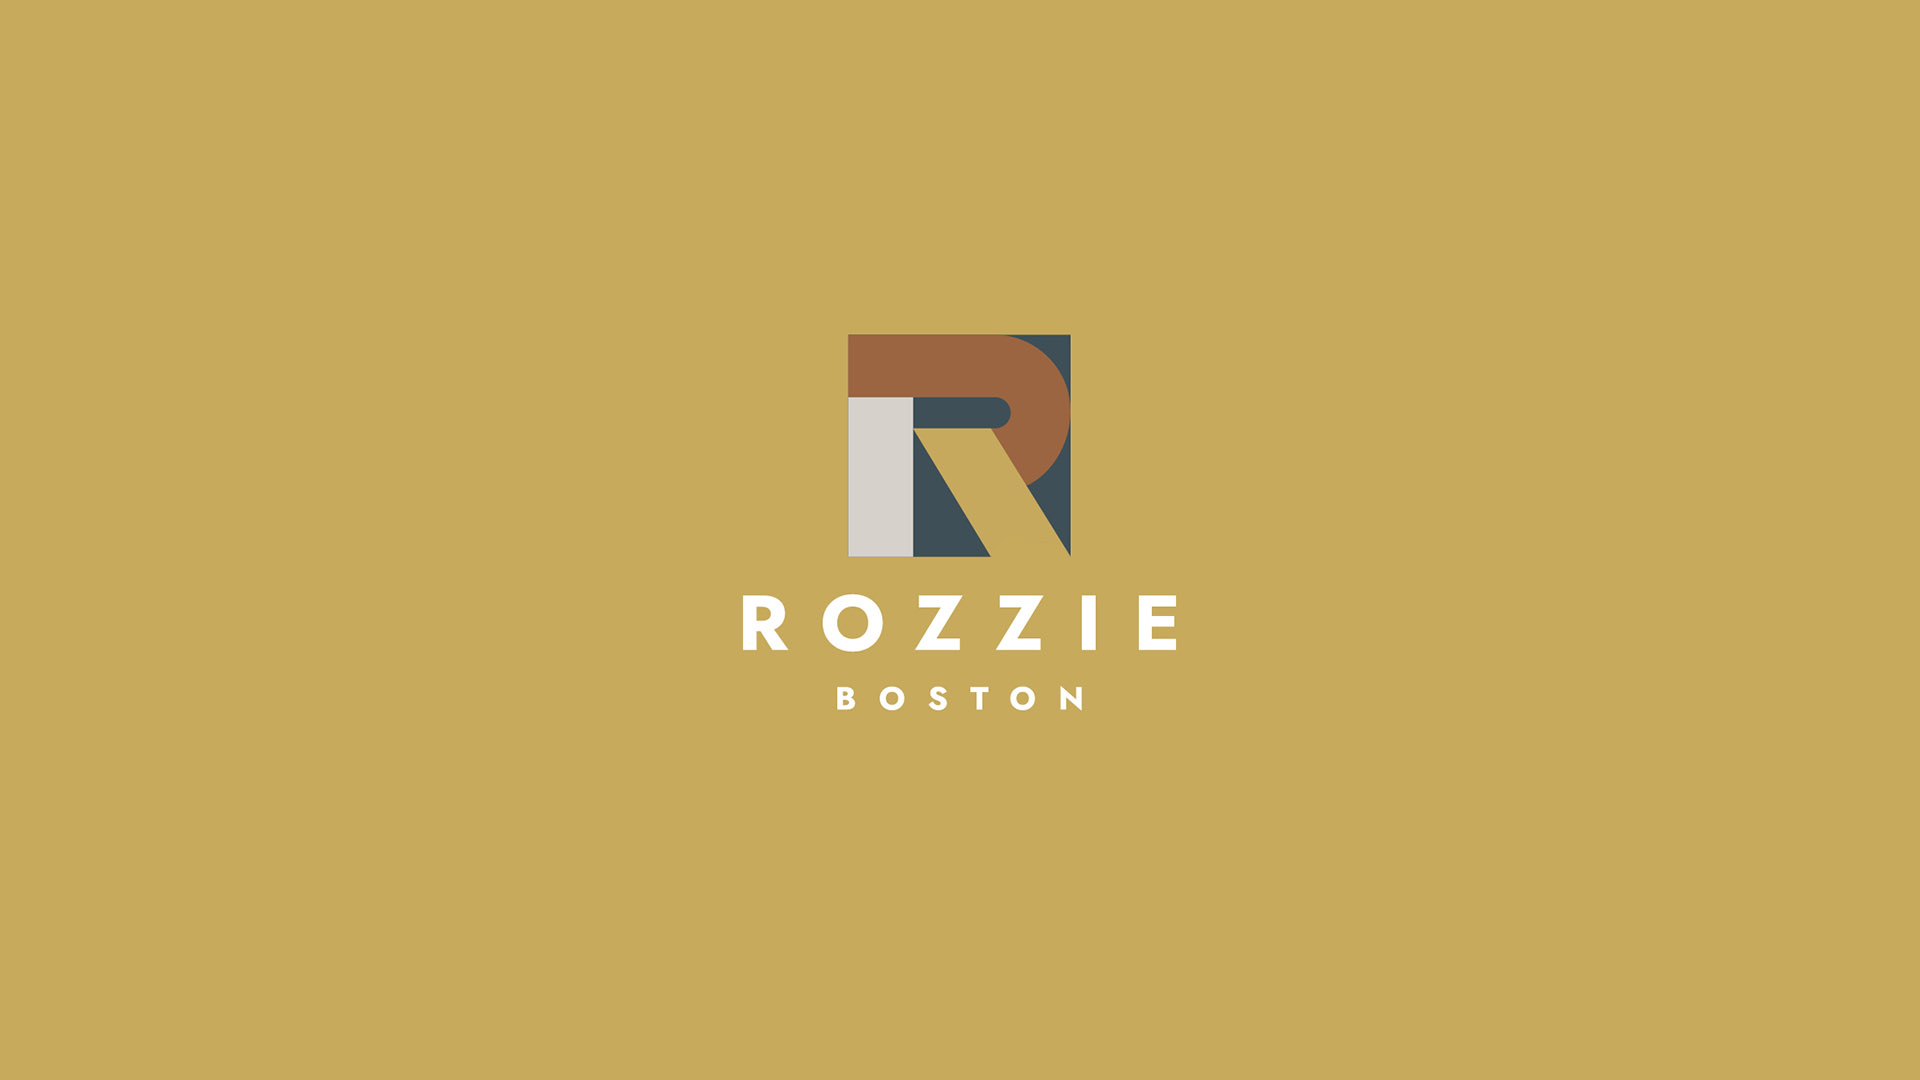 rozzie boston logo on yellow